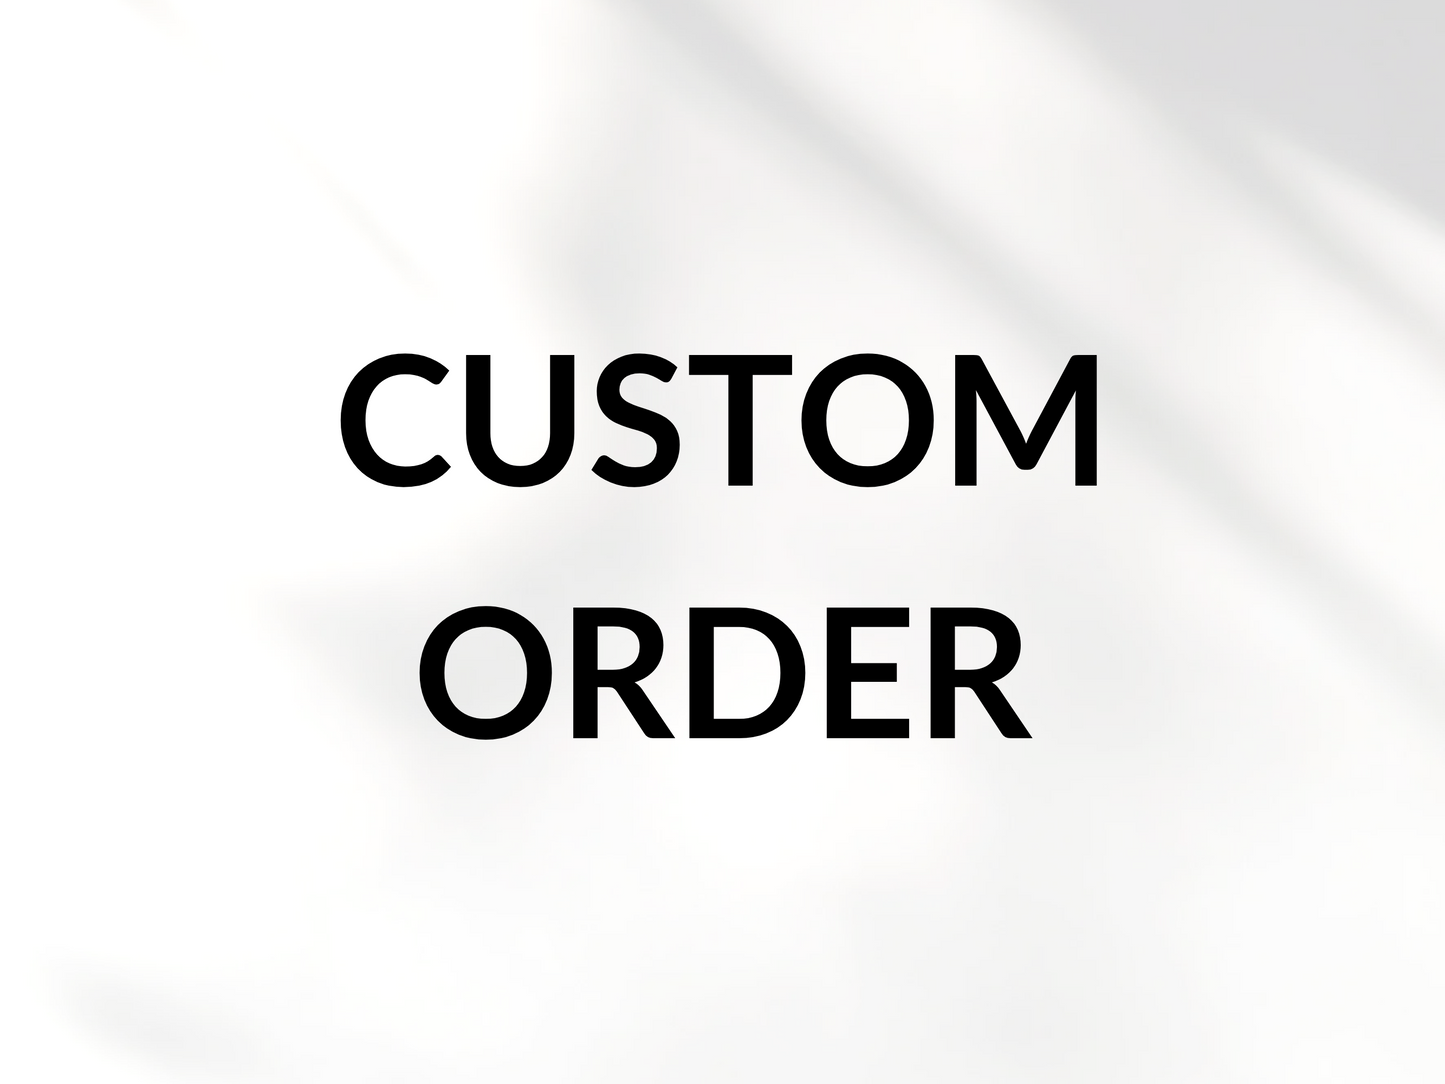 Custom order for Kim